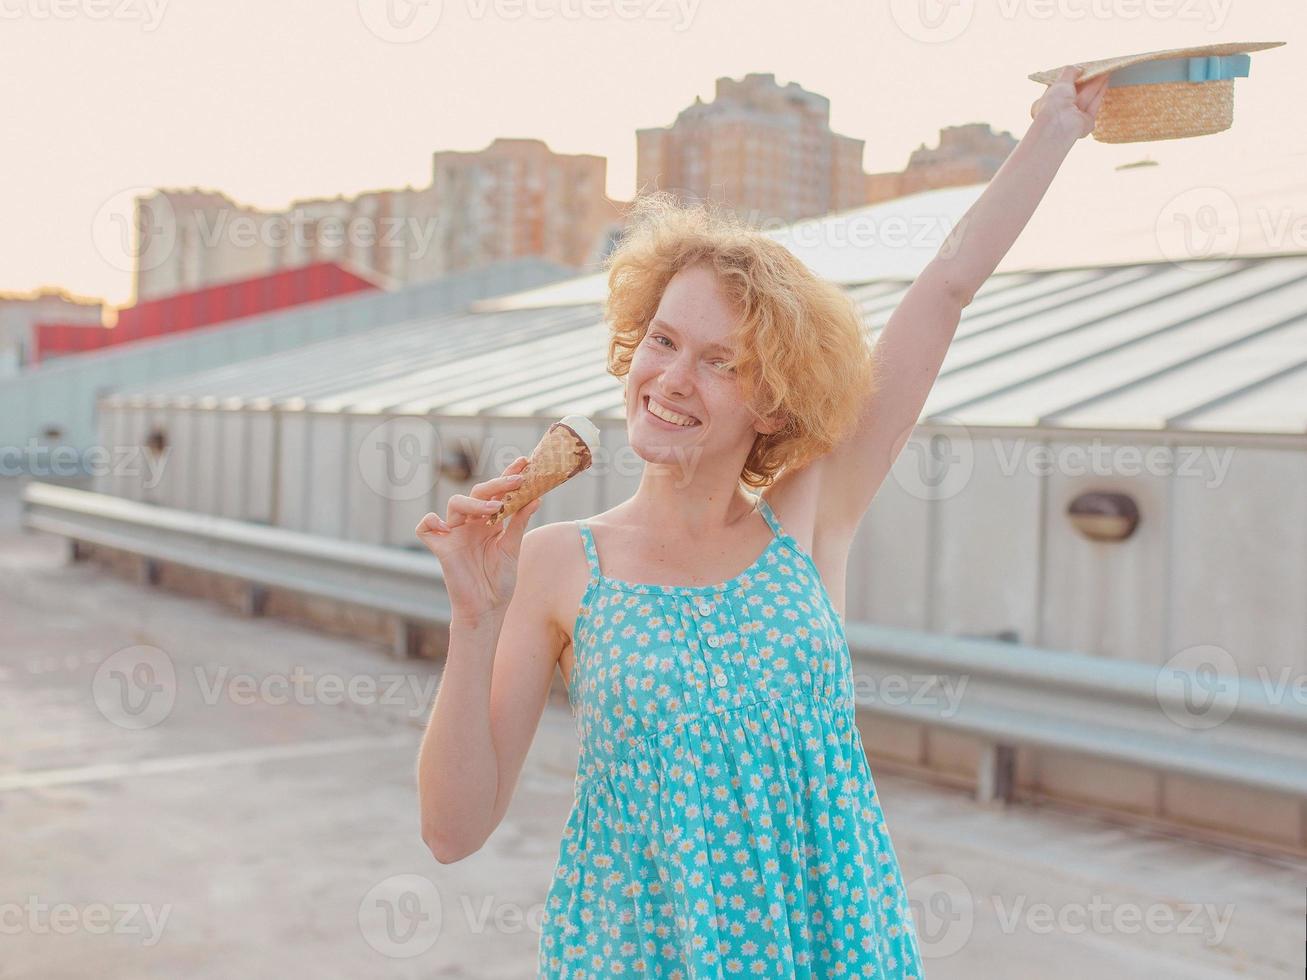 jeune femme rousse bouclée joyeuse et heureuse au chapeau de paille, robe d'été bleue mangeant de la glace sur le toit du gratte-ciel. amusement, mode de vie, urbain, moderne, toit, ville, été, mode, concept jeunesse photo